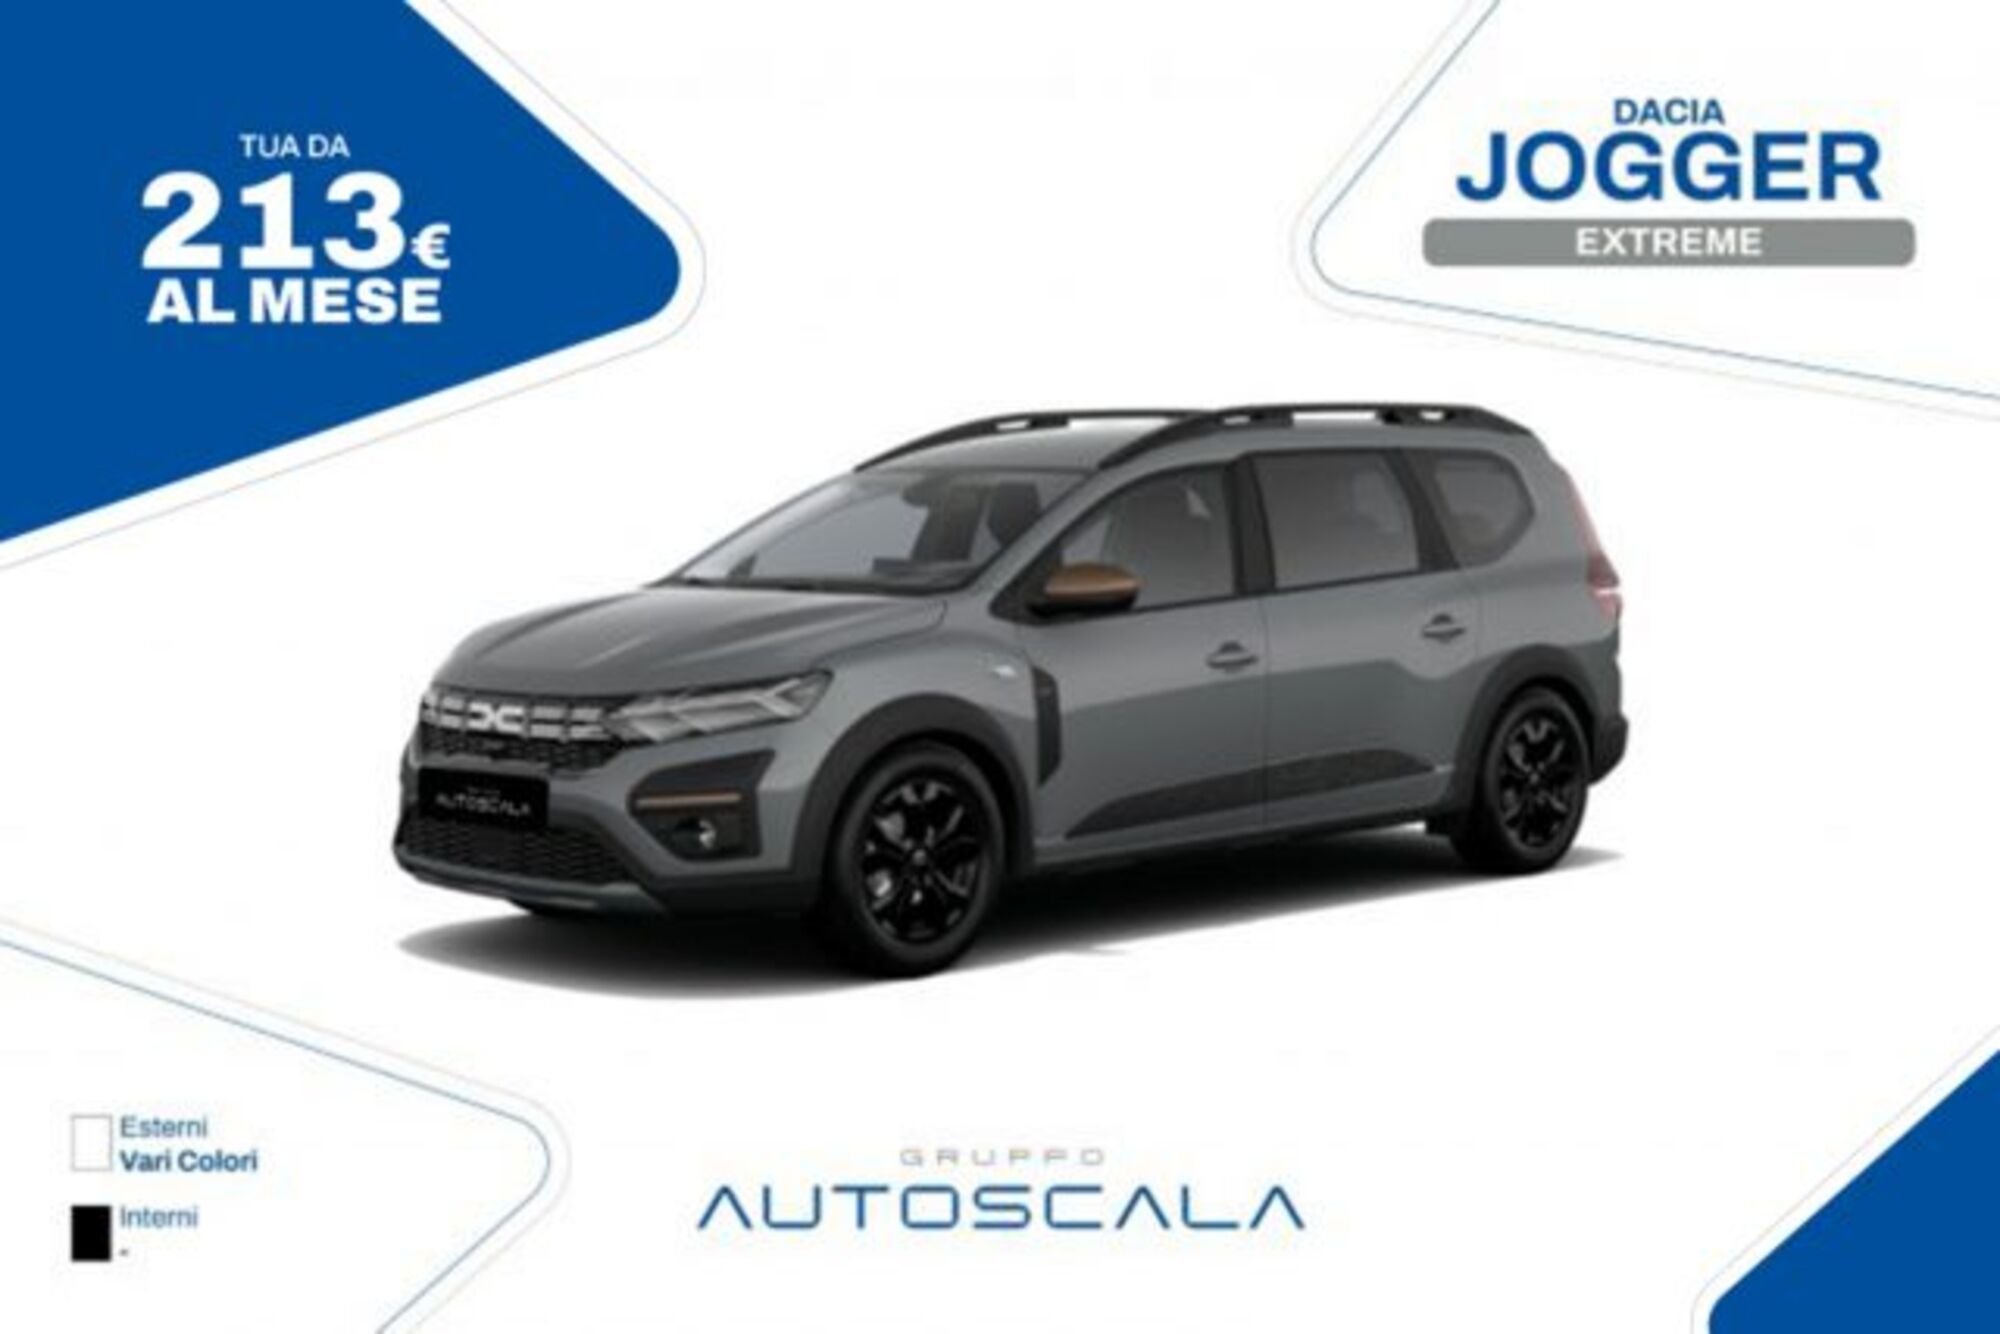 Dacia Jogger Jogger 1.0 TCe GPL 100 CV 7 posti Extreme my 21